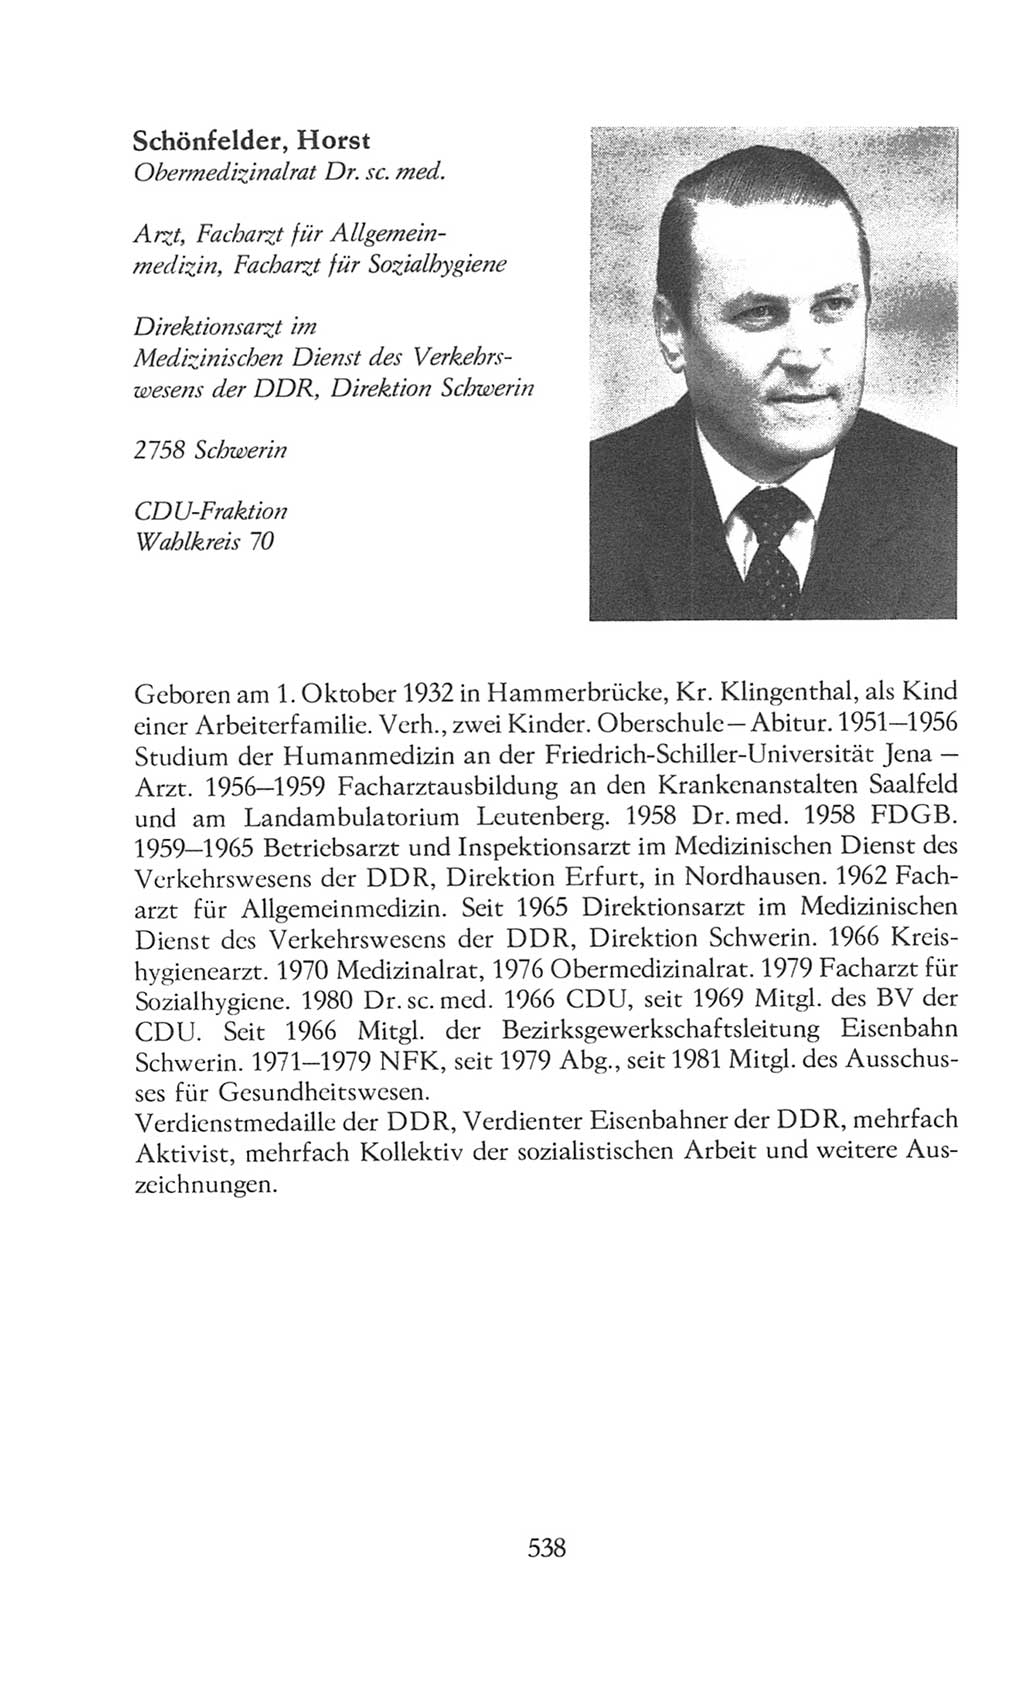 Volkskammer (VK) der Deutschen Demokratischen Republik (DDR), 8. Wahlperiode 1981-1986, Seite 538 (VK. DDR 8. WP. 1981-1986, S. 538)